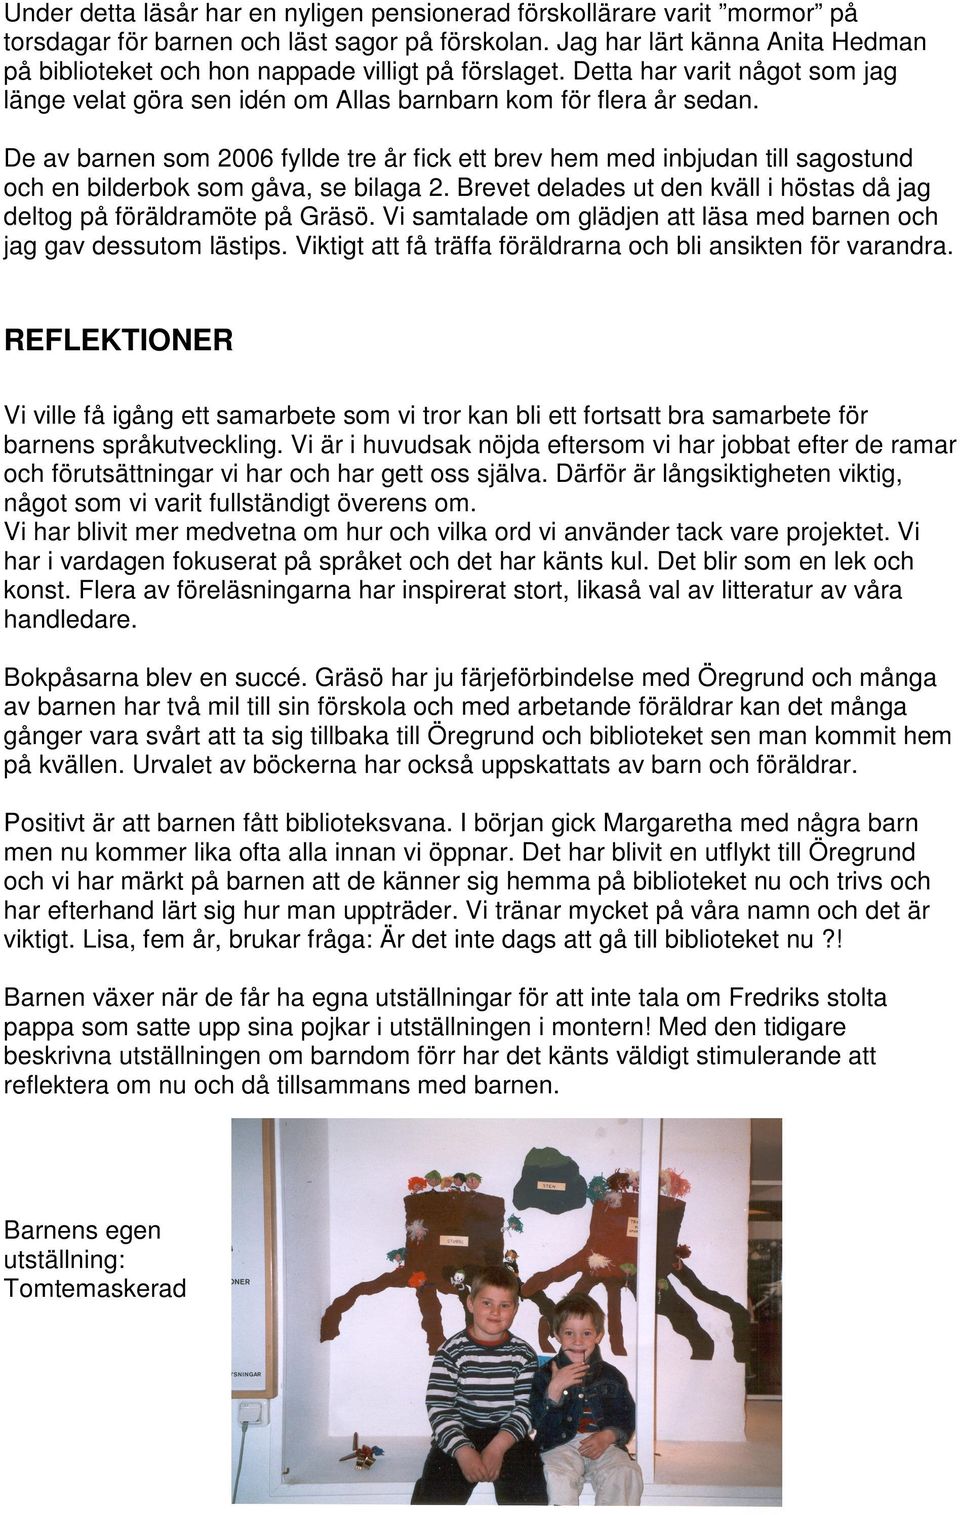 De av barnen som 2006 fyllde tre år fick ett brev hem med inbjudan till sagostund och en bilderbok som gåva, se bilaga 2. Brevet delades ut den kväll i höstas då jag deltog på föräldramöte på Gräsö.